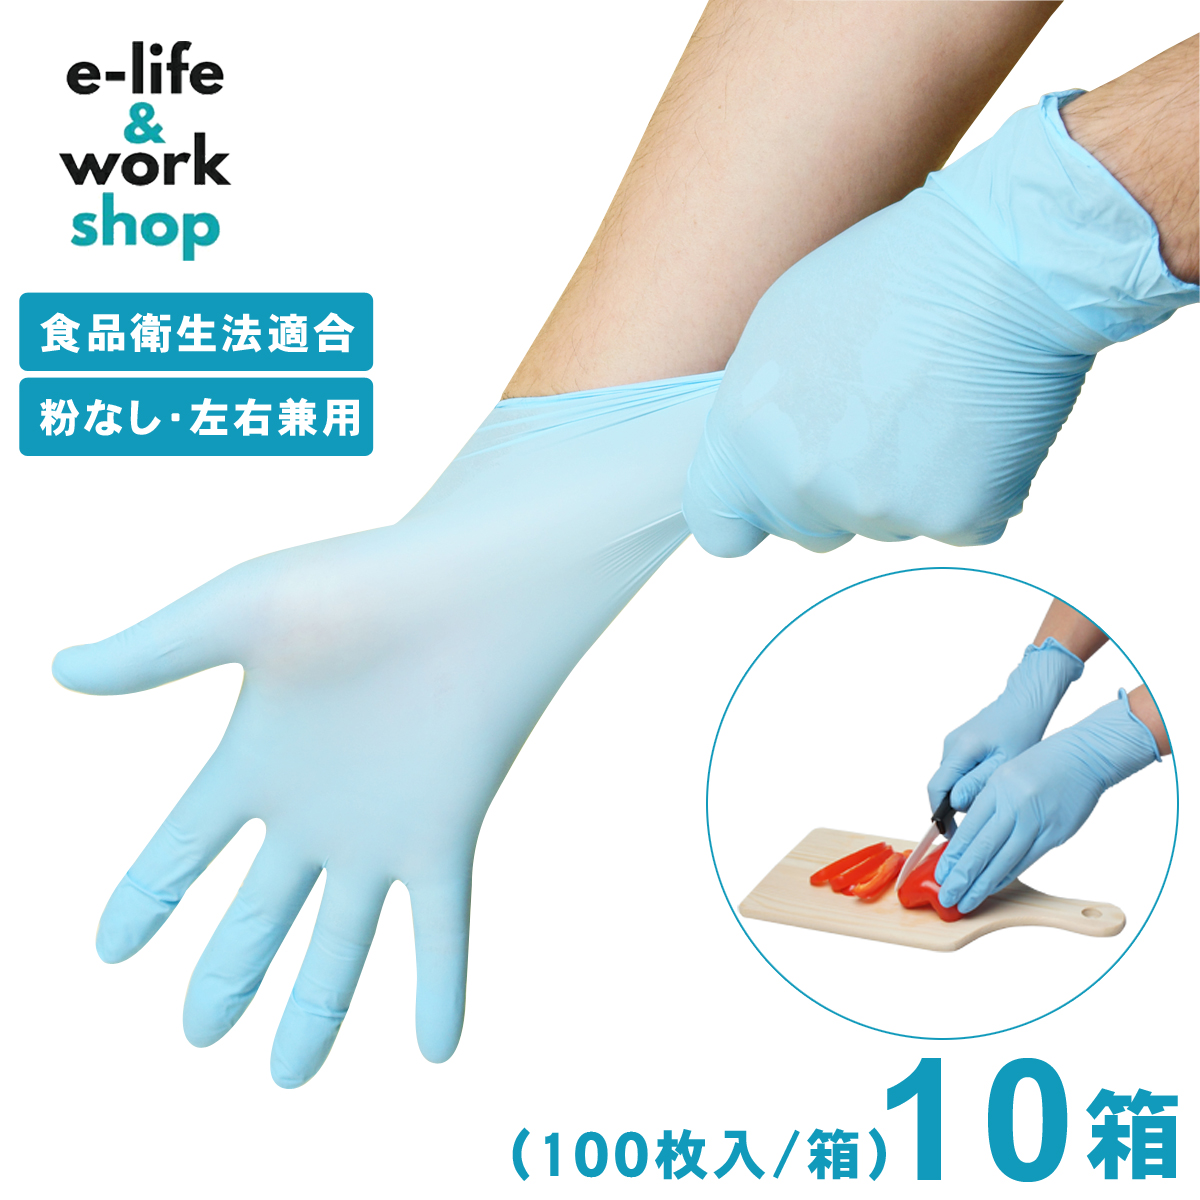 【楽天市場】ニトリル手袋 100枚入 【1箱】 青 パウダーフリー食品 